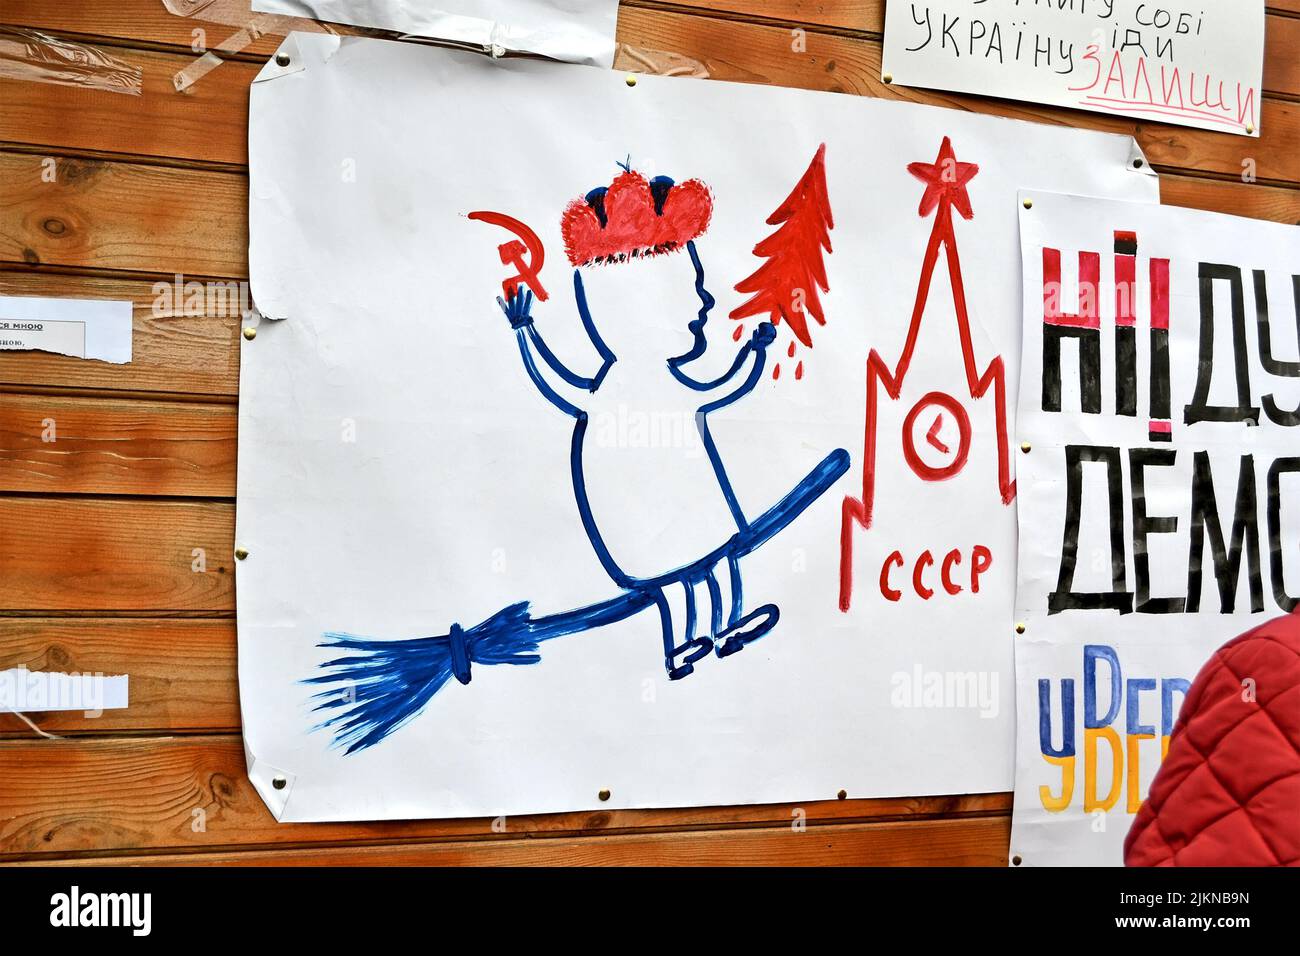 Affiche avec un arbre de sang sur la langue ukrainienne sur la réunion Euro maidan à Kiev. Réunion consacrée au déclin de l'Ukraine pour l'intégration à l'UE. Banque D'Images